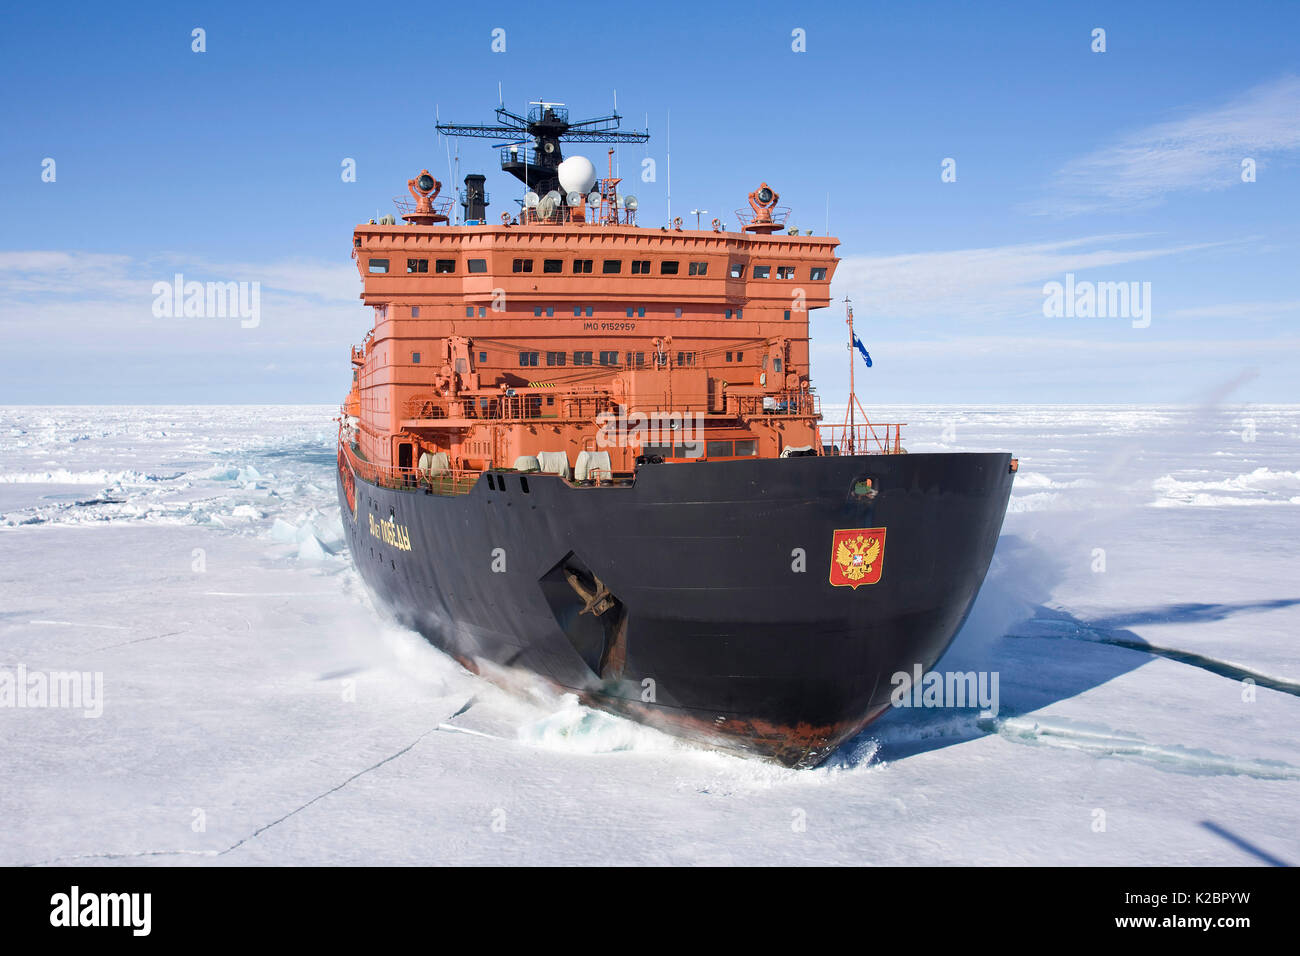 Die weltweit größte Atom-icebreaker, "50 Jahre Sieg", auf dem Weg zum Nordpol, Arktis, Juli 2008. Alle nicht-redaktionelle Verwendungen muß einzeln beendet werden. Stockfoto